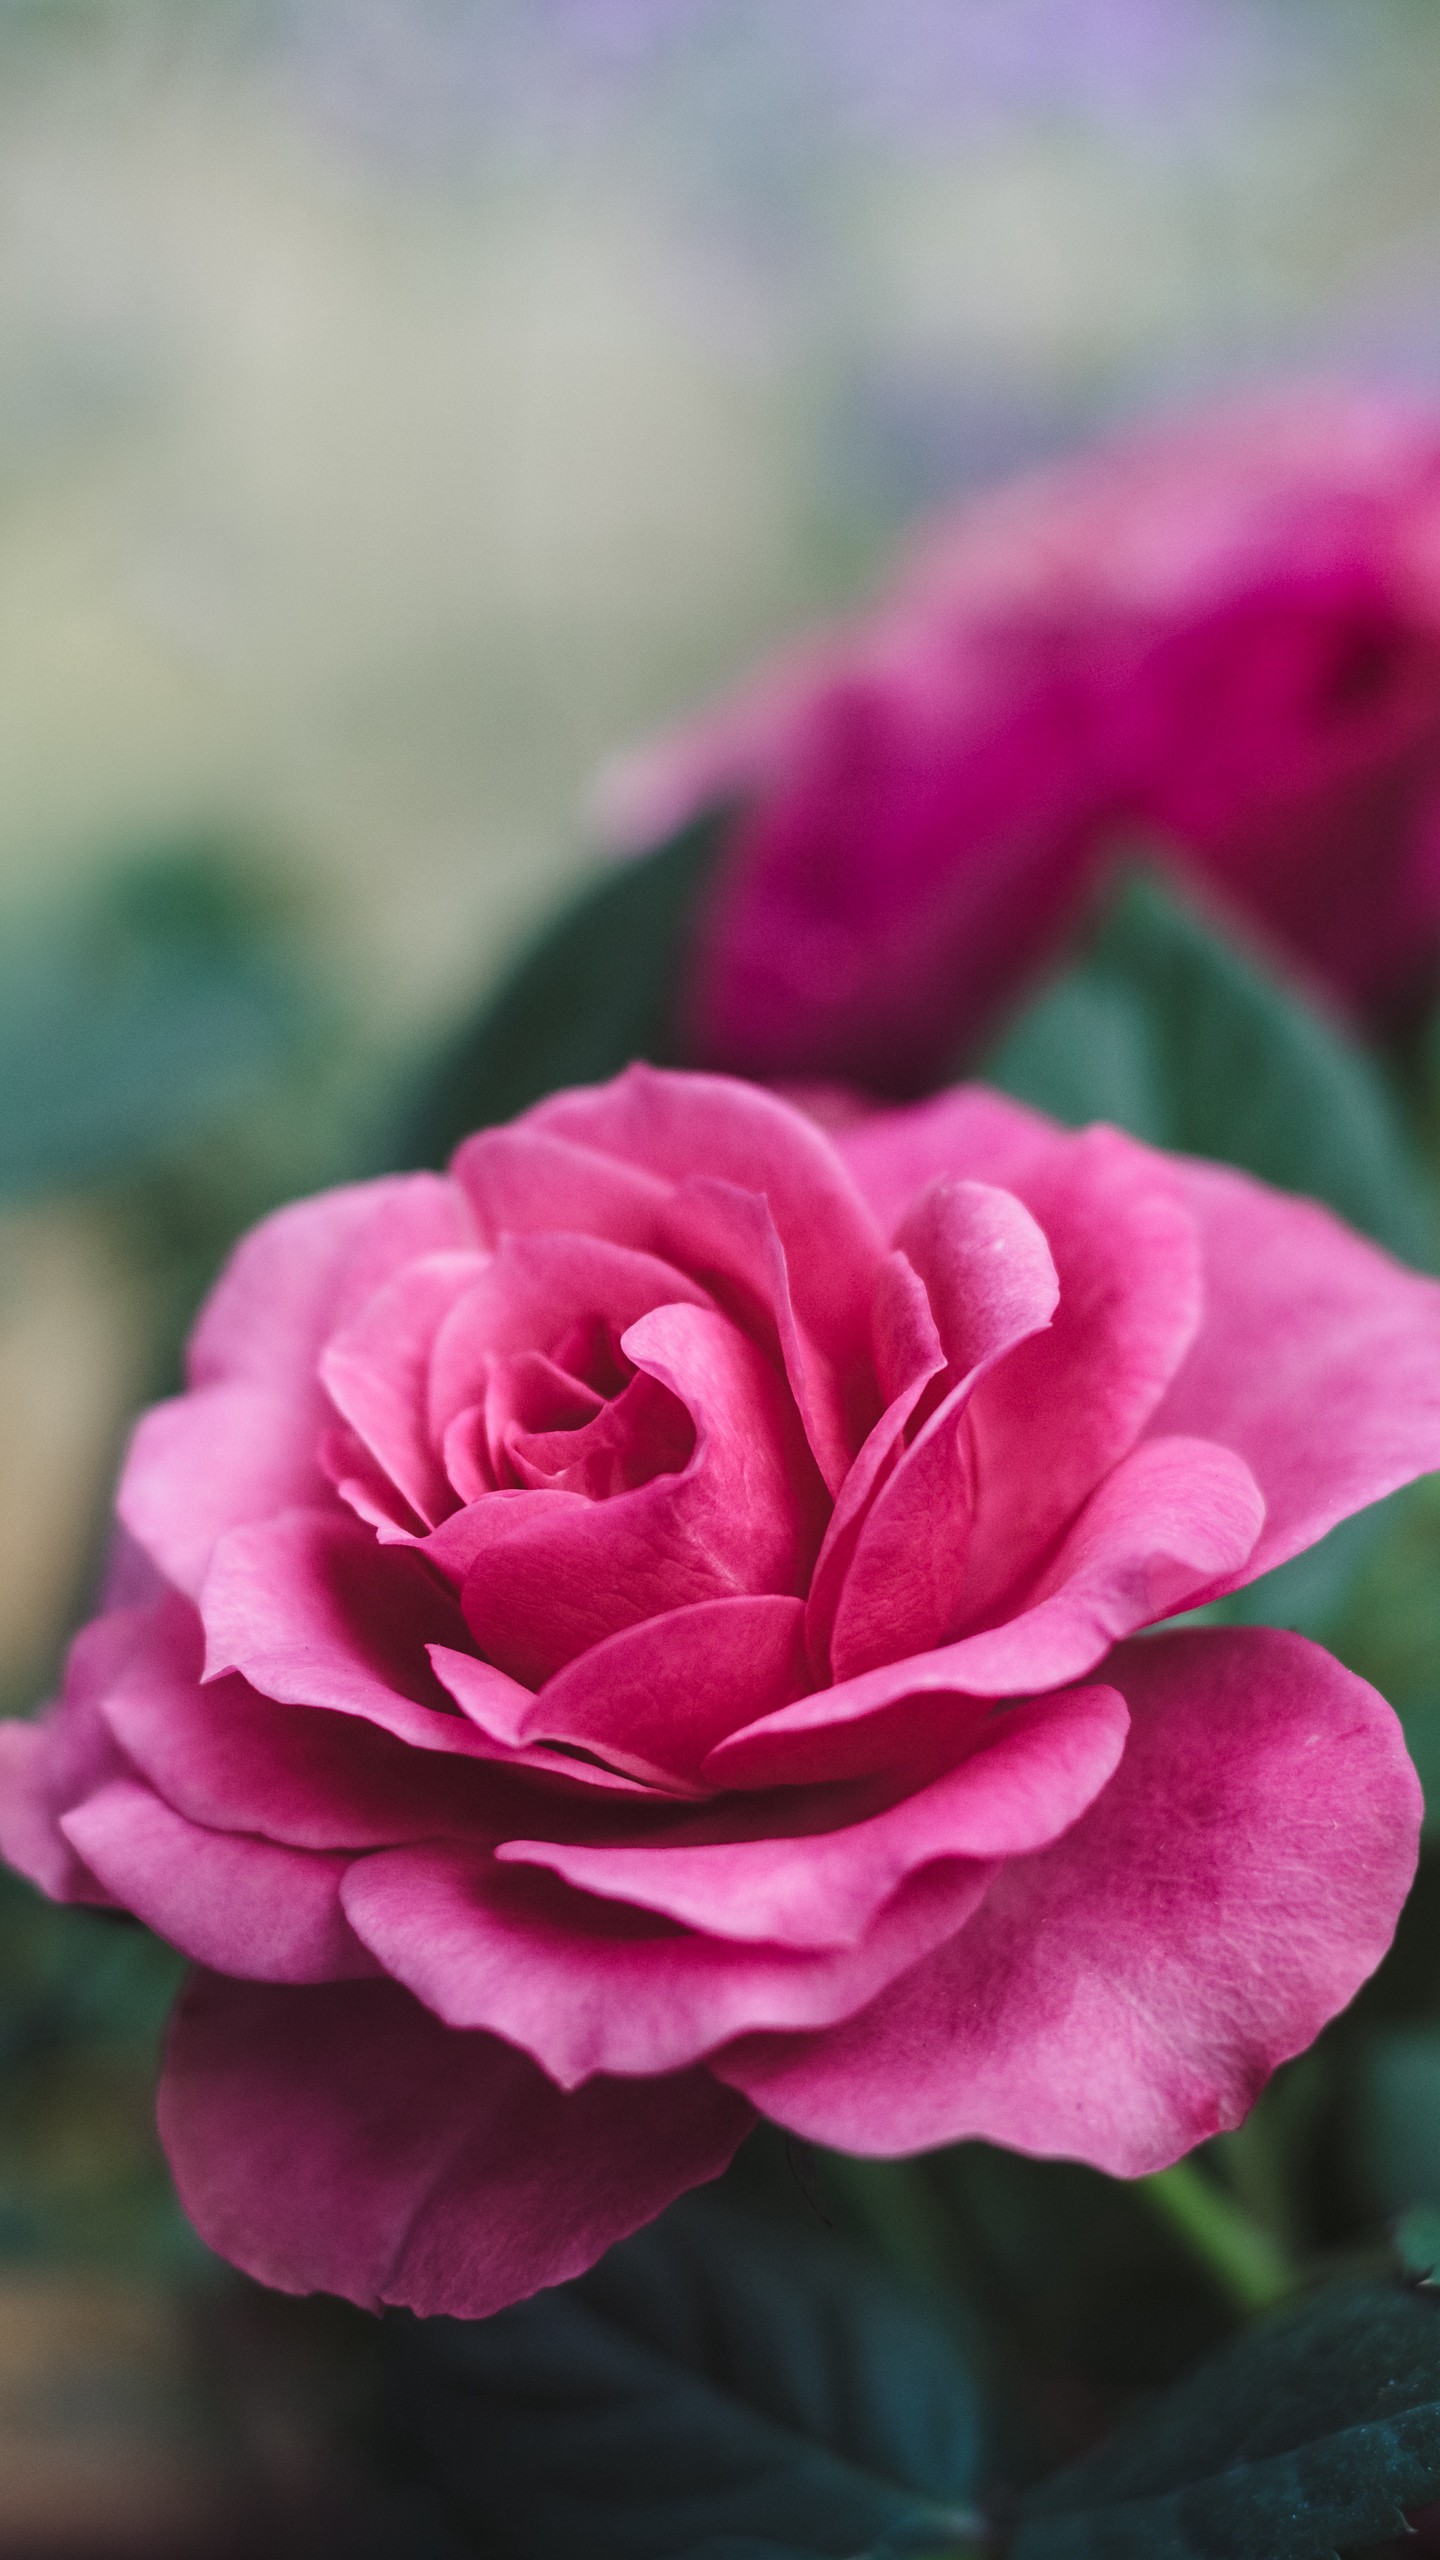 Цветок красной розы на фоне поля ромашек (крупным планом)